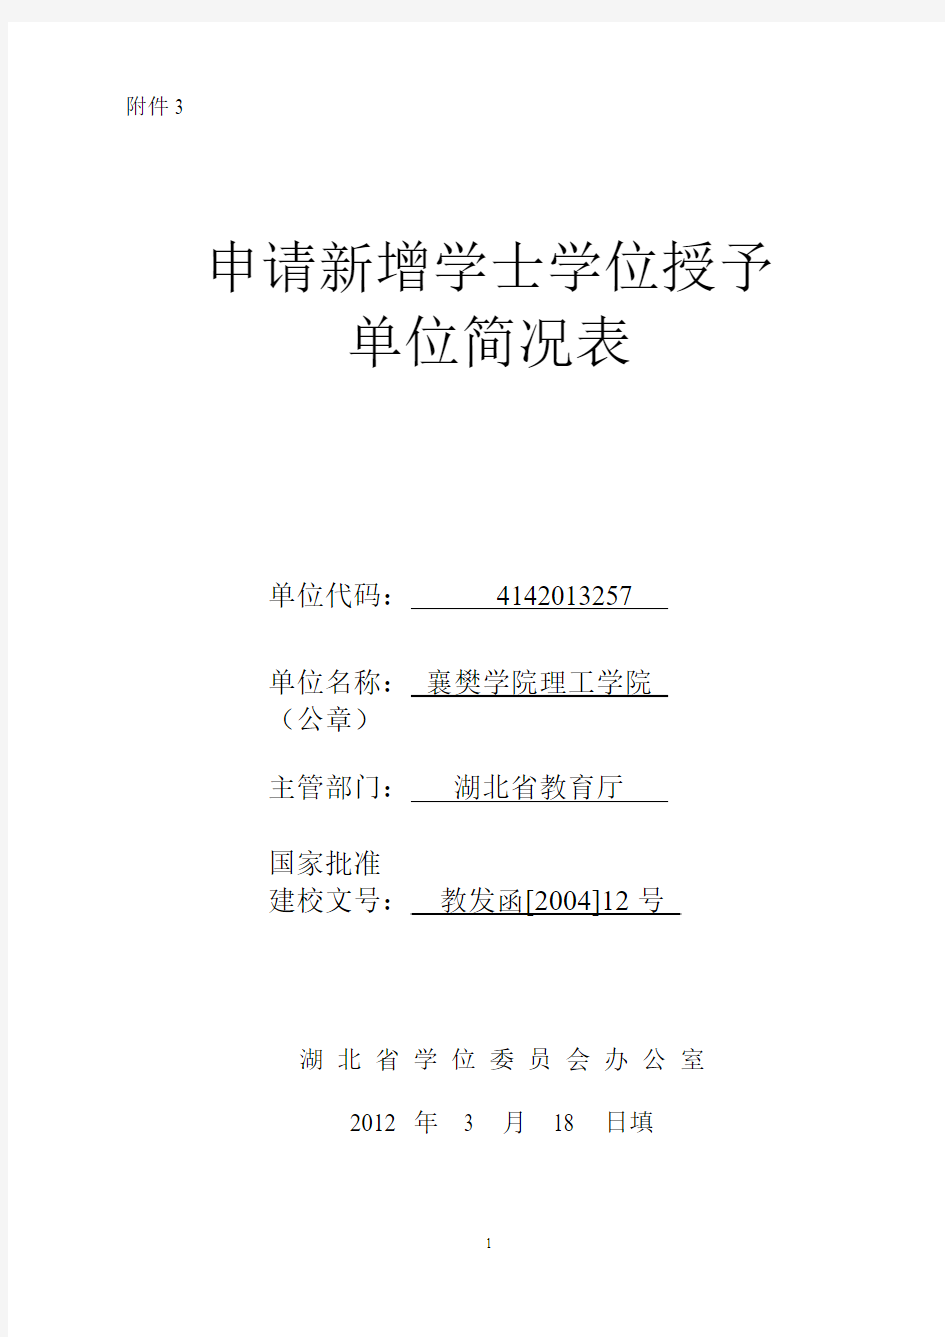 湖北文理学院理工学院(原襄樊学院理工学院)学士学位授予权申报材料